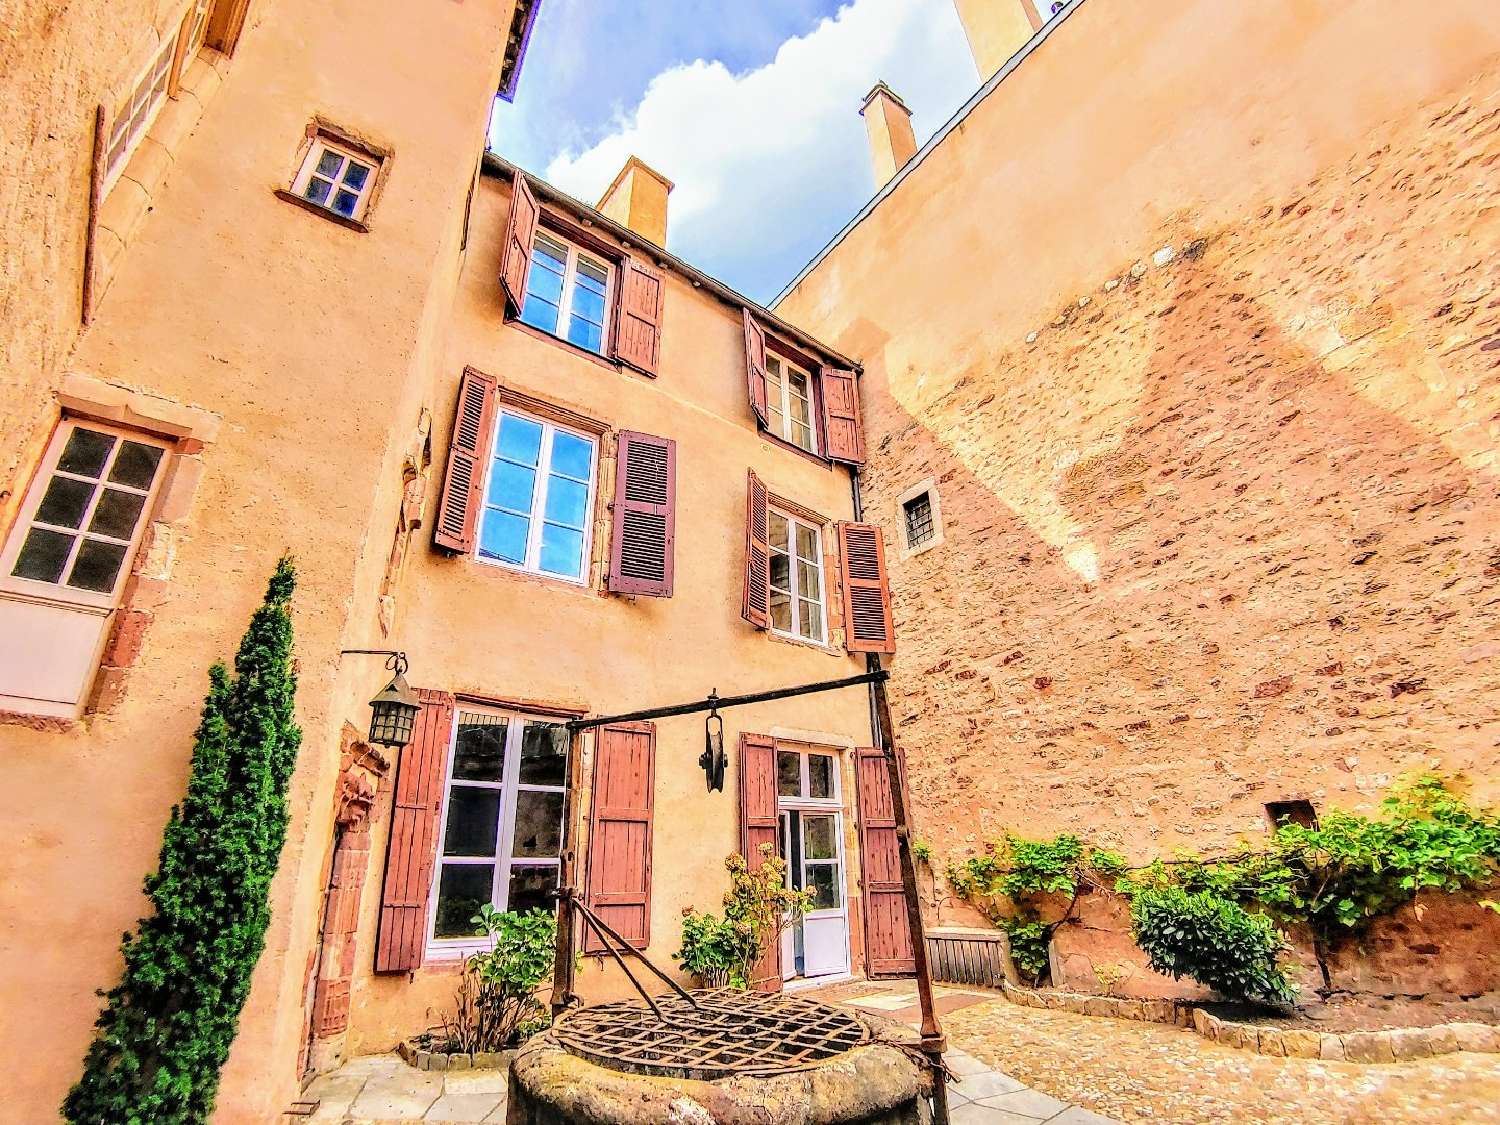  à vendre maison Rodez Aveyron 3